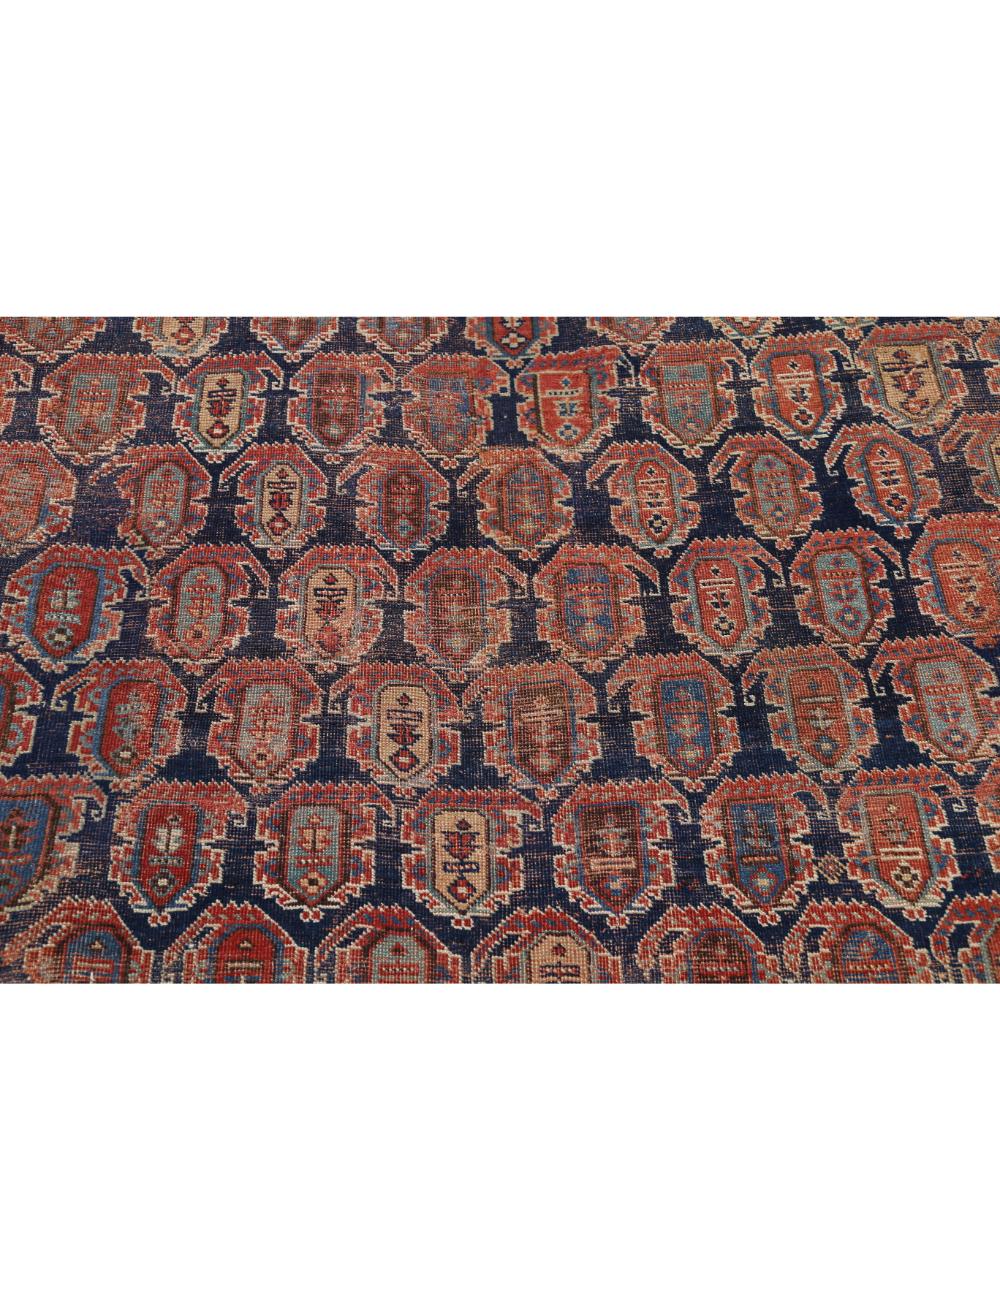 Hand Knotted Antique Persian Afshar Wool Rug - 6'3'' x 15'1'' Arteverk Arteverk Rugs